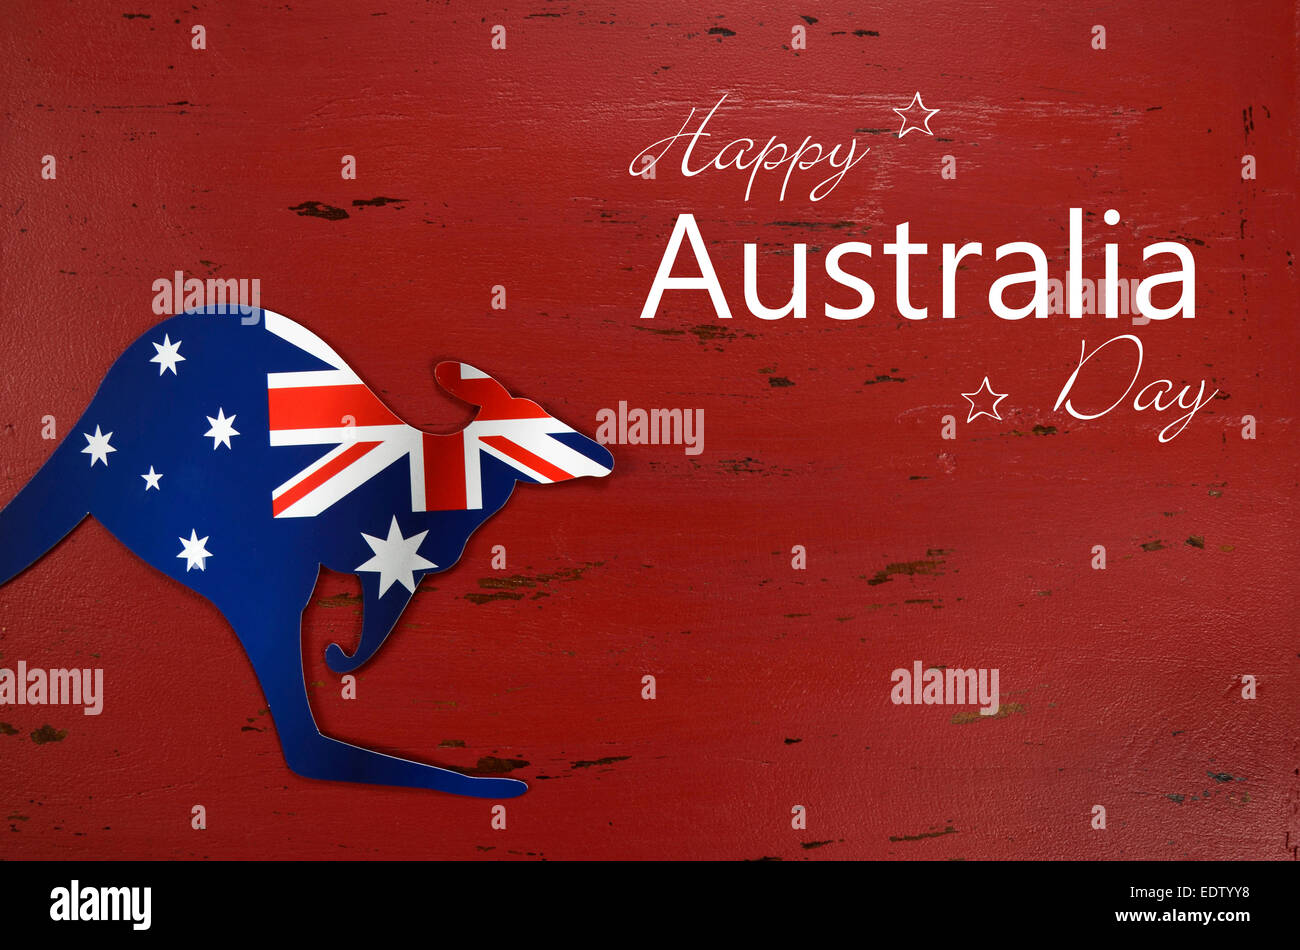 Ngày Quốc kỳ Australia được tổ chức vào ngày 26 tháng 1 hàng năm để tôn vinh quốc kỳ và nền văn hóa đặc trưng của nước Úc. Nó là một ngày quan trọng cho toàn bộ quốc dân, một ngày để tổ chức các hoạt động, sự kiện biểu diễn và hưởng thụ những thức ăn truyền thống.